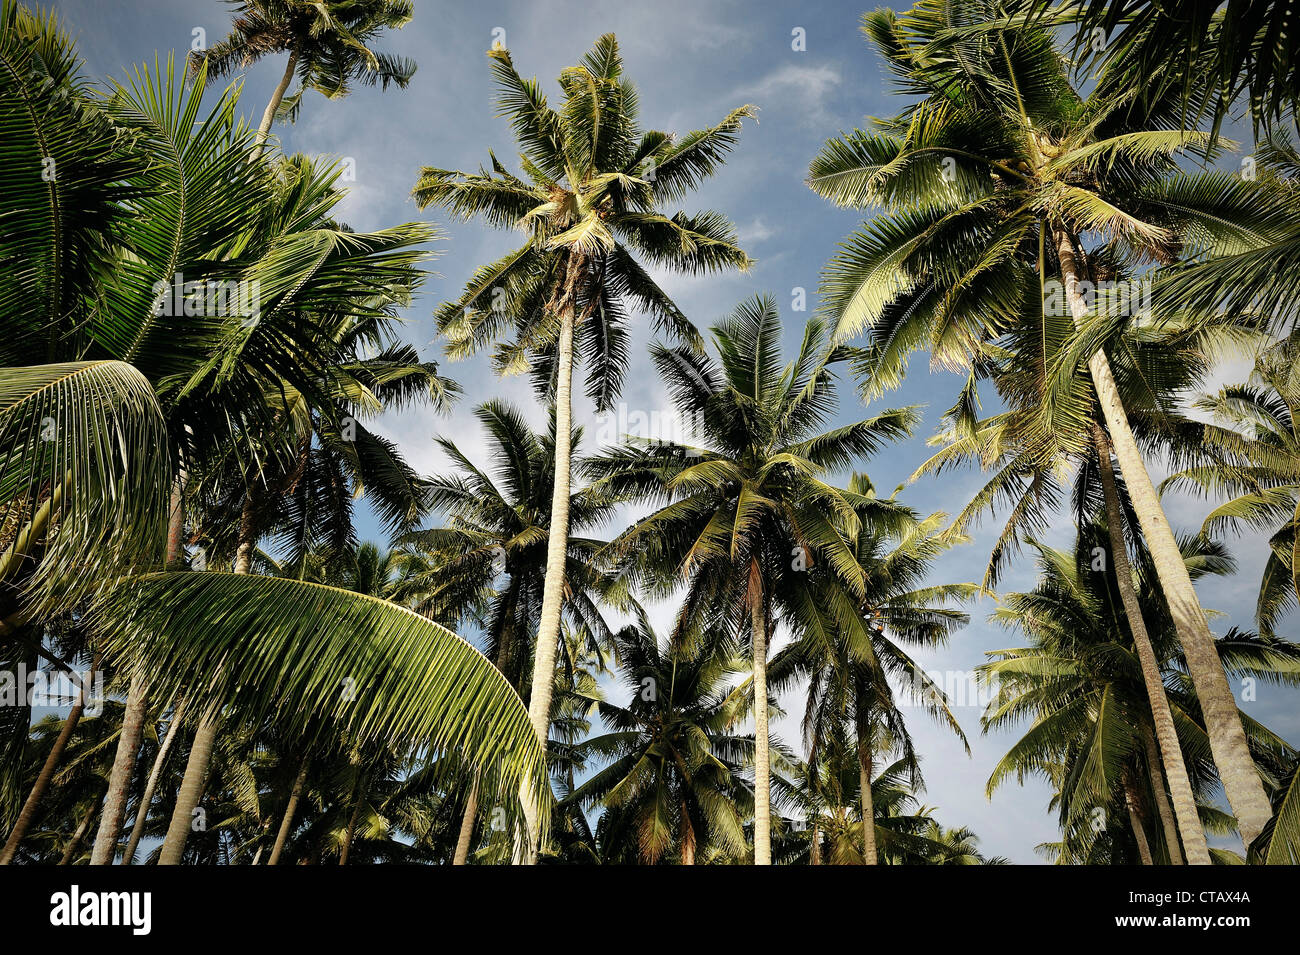 Beaucoup de palmiers dans la capitale, Apia, Samoa Upolu, dans le sud de l'île du Pacifique Banque D'Images